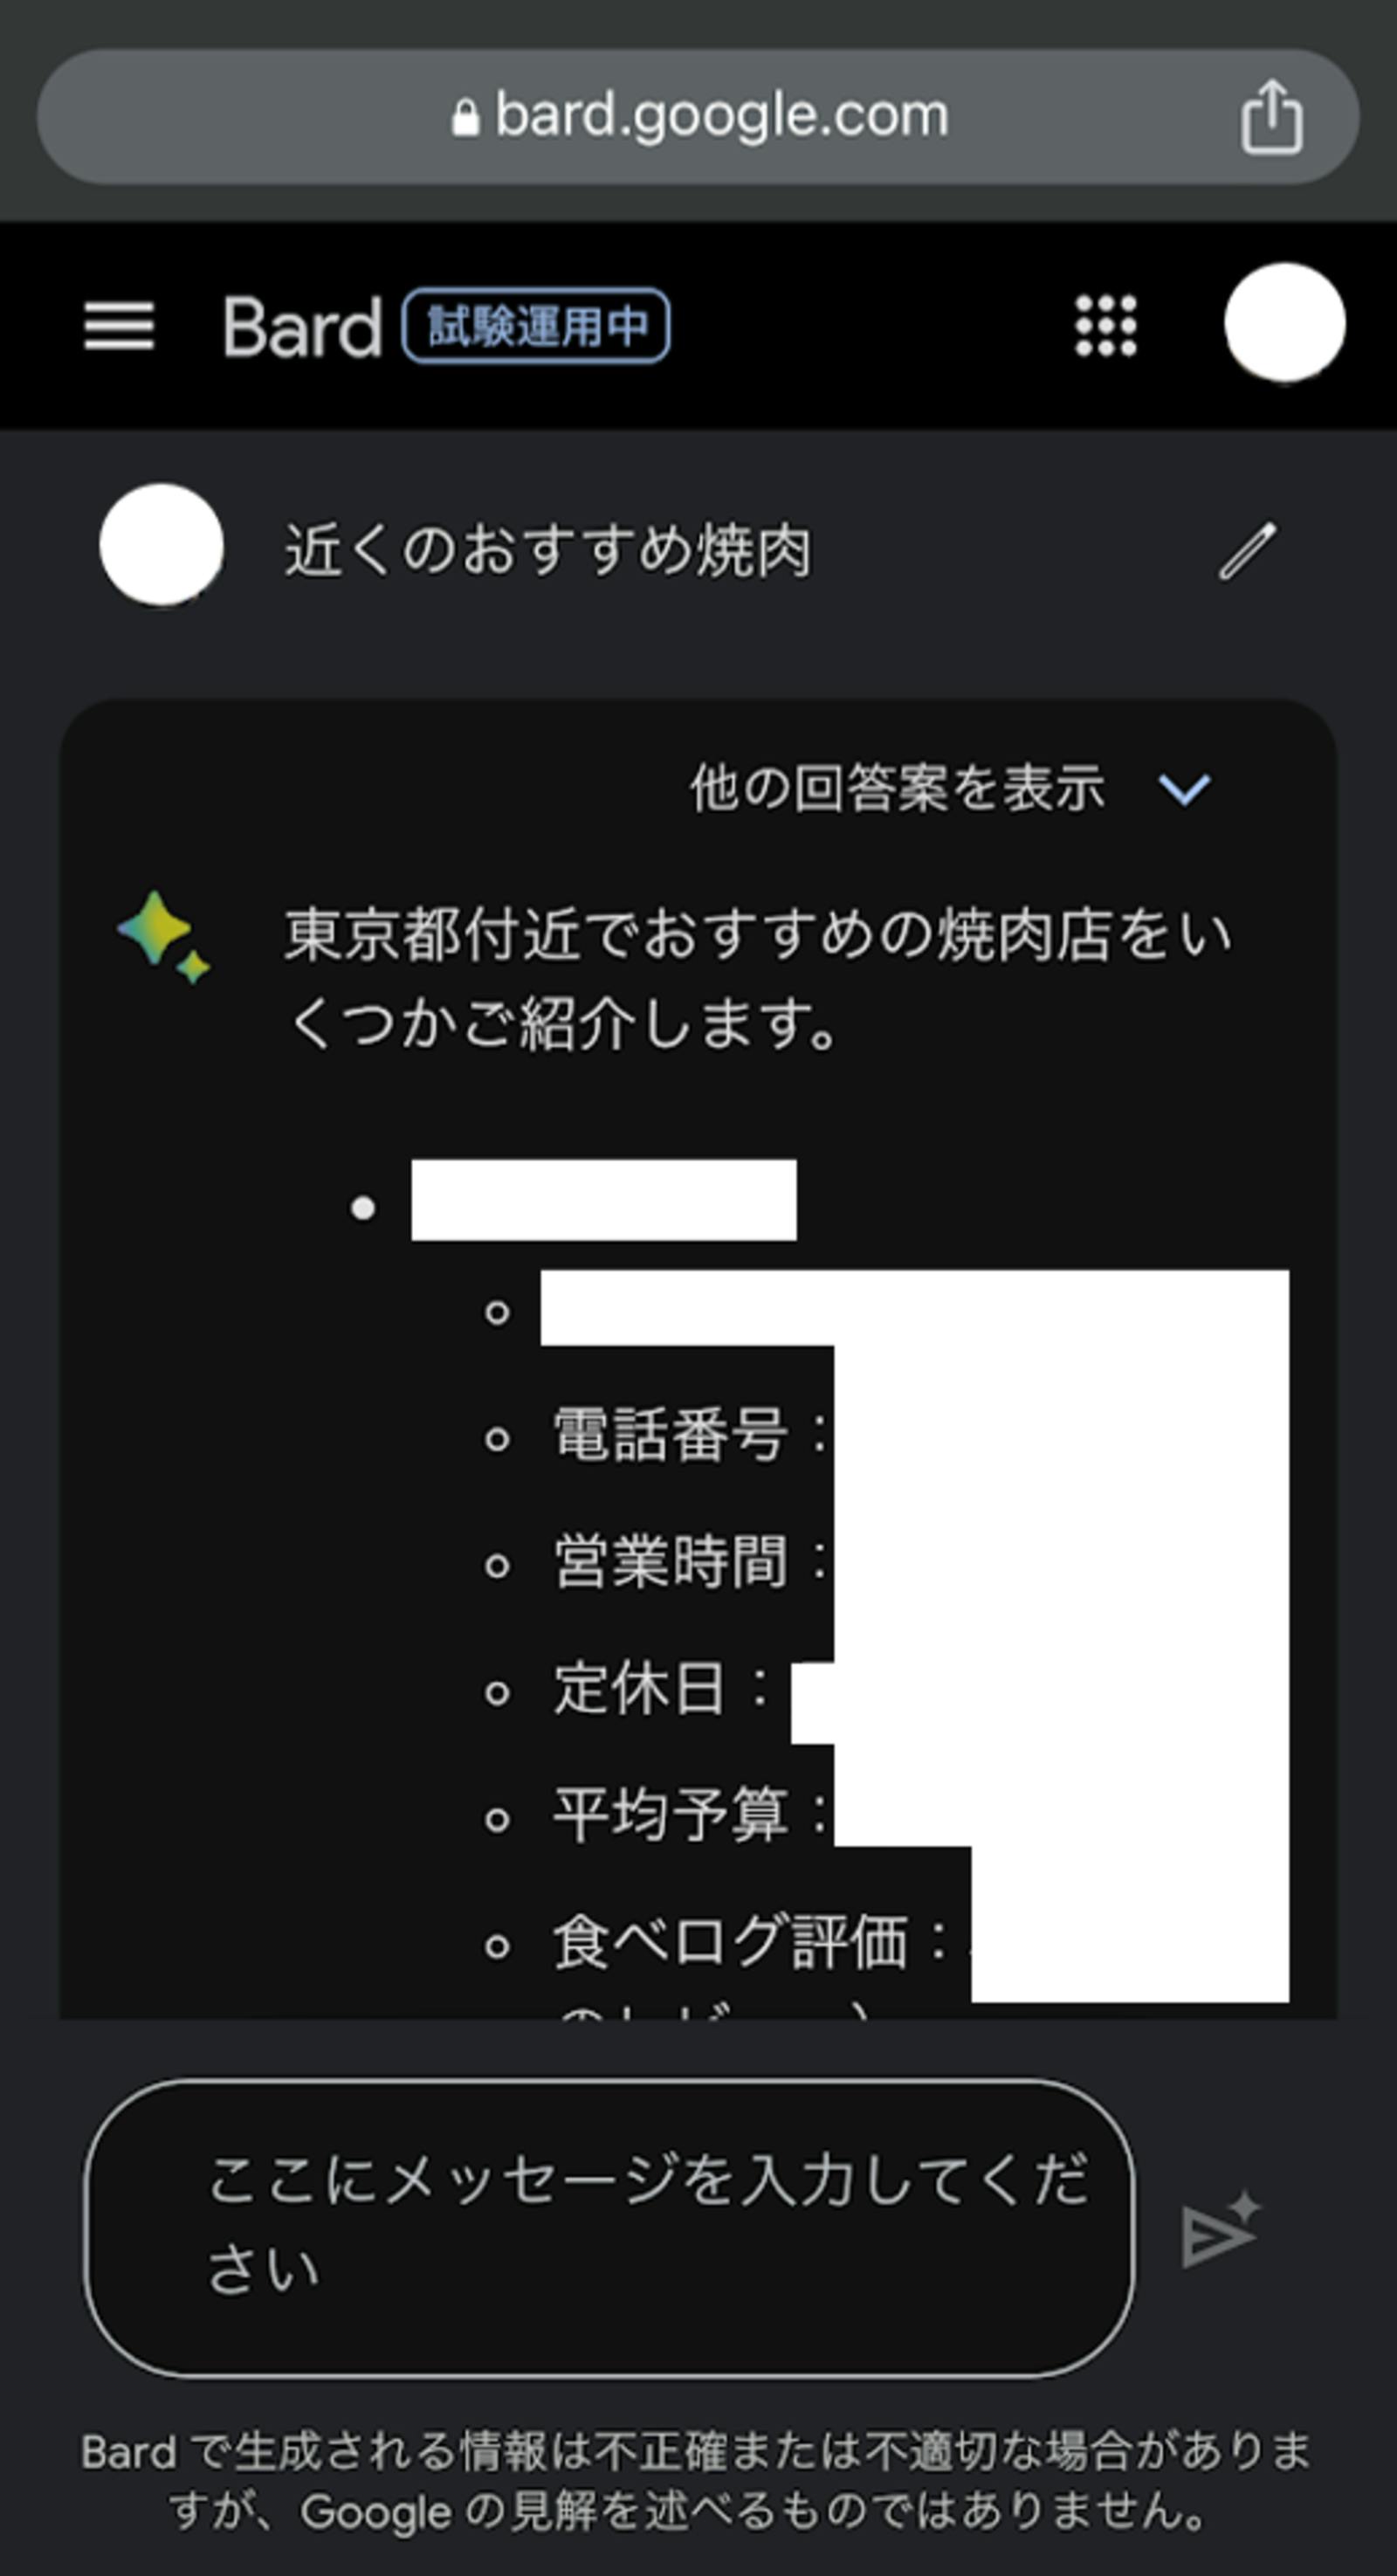 位置情報が正確でないときにBardで検索すると、現在地は大阪府ではあるが、東京都に関する回答が生成された。